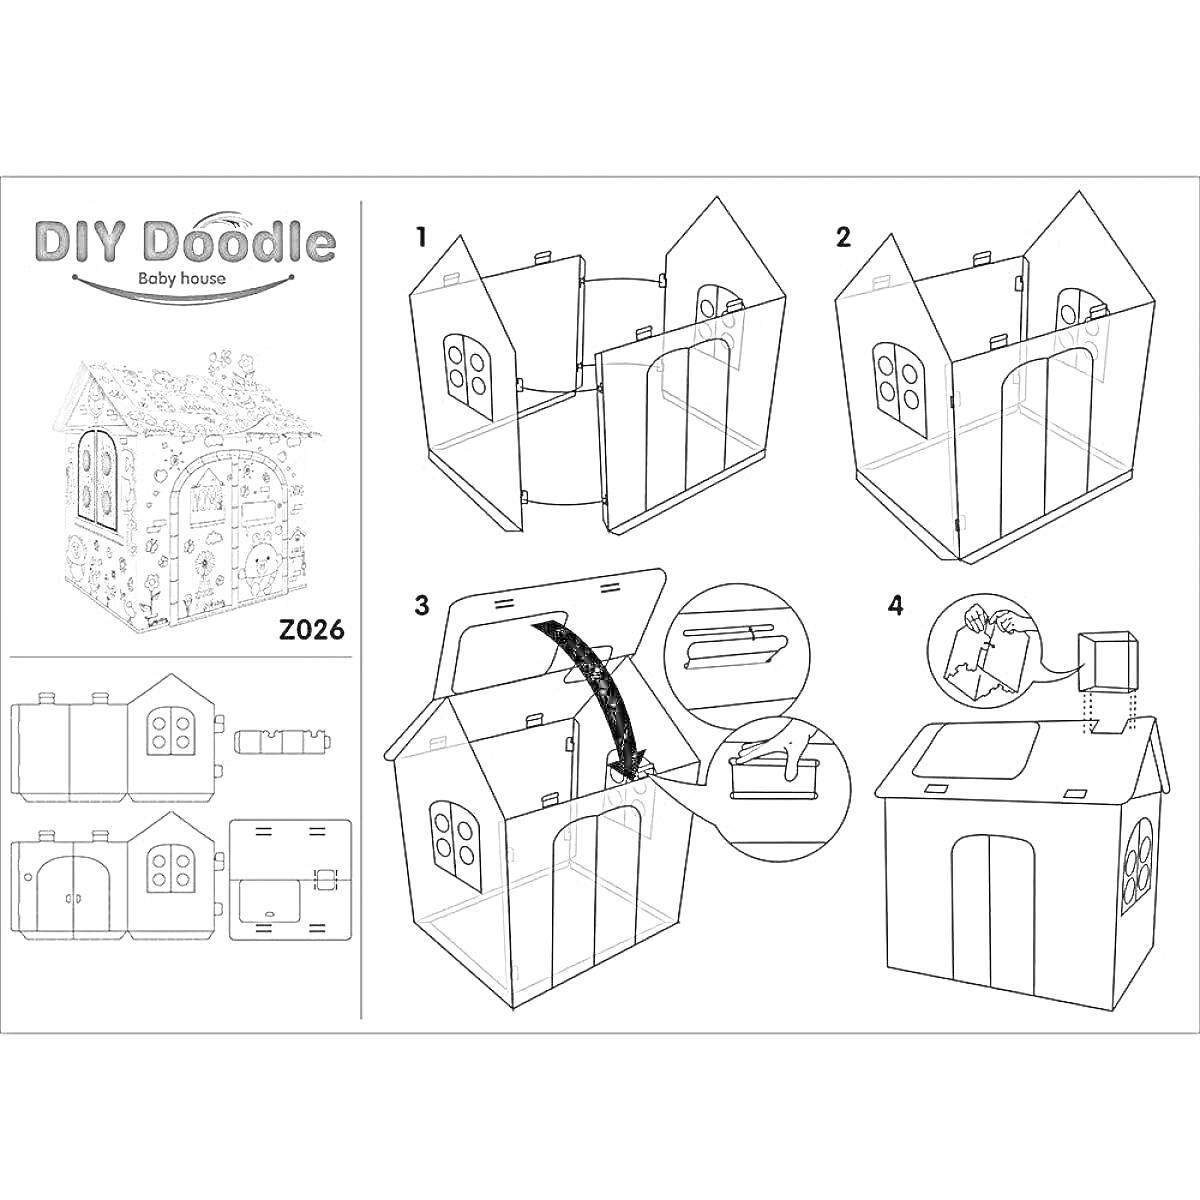 Раскраска Инструкция для сборки и раскрашивания картонного домика с окнами и дверью, изображены этапы сборки